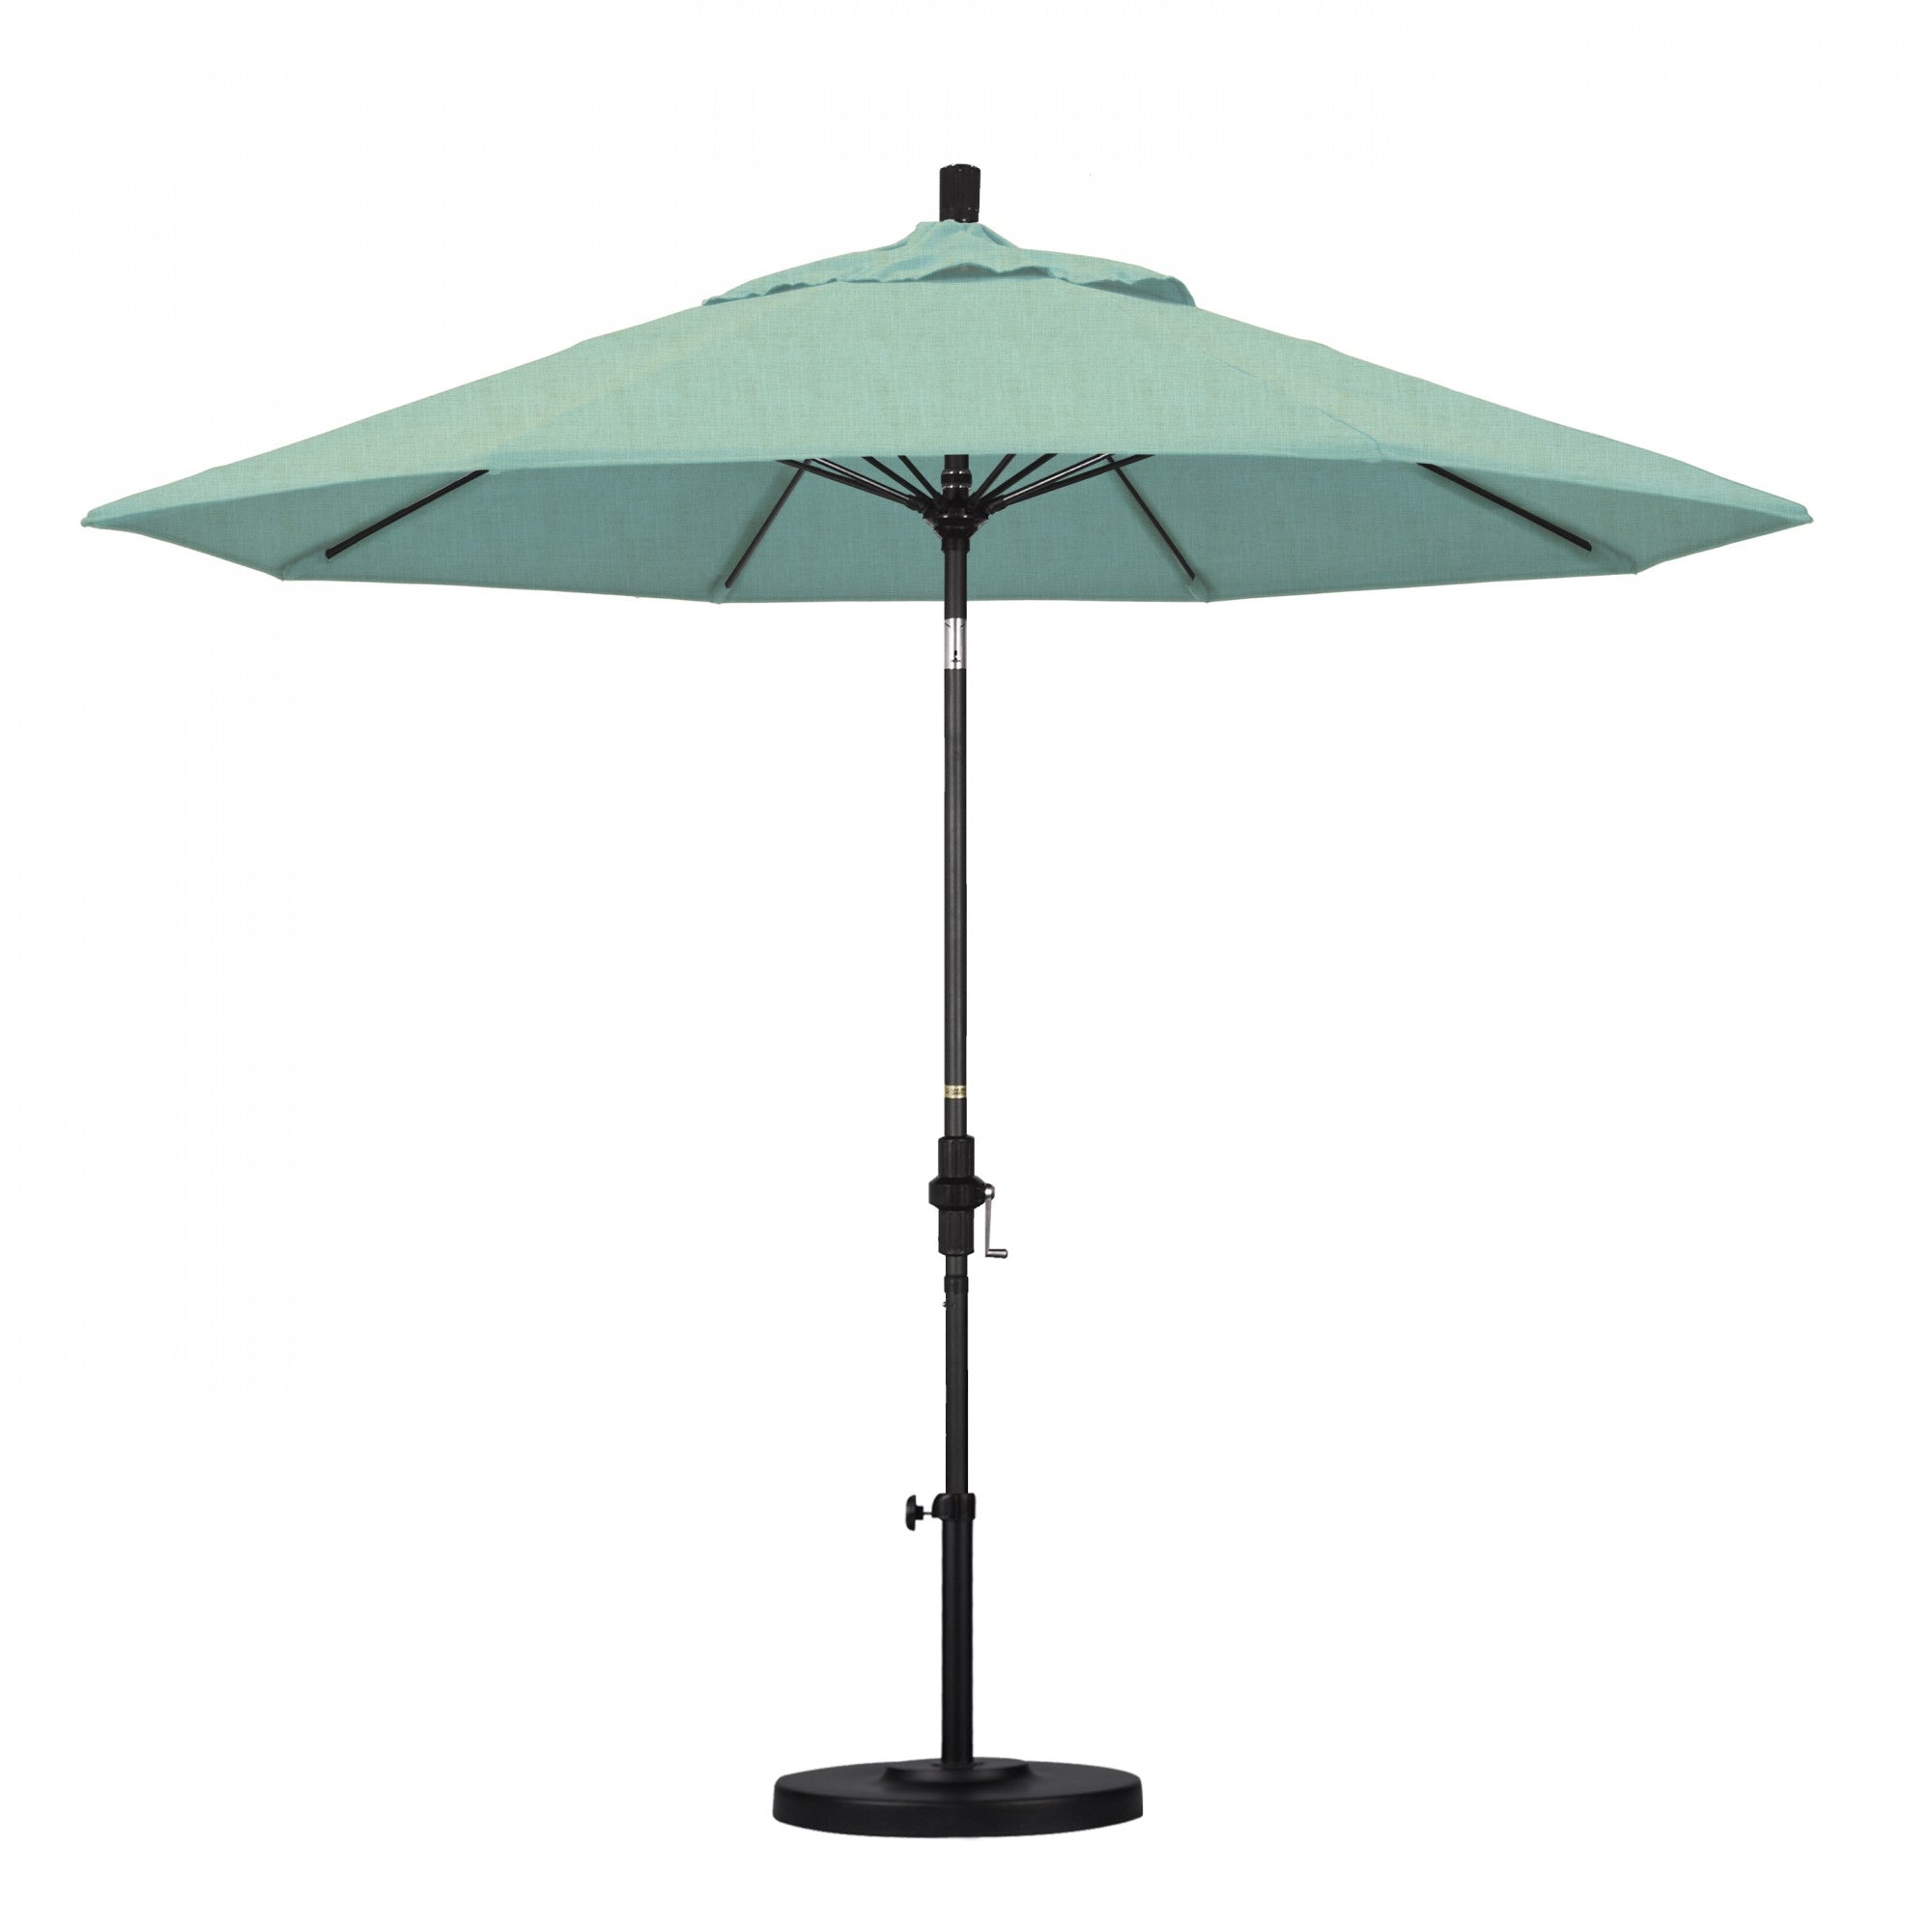 California Umbrella - 9' - Patio Umbrella Umbrella - Aluminum Pole - Spectrum Mist - Sunbrella  - GSCUF908705-48020